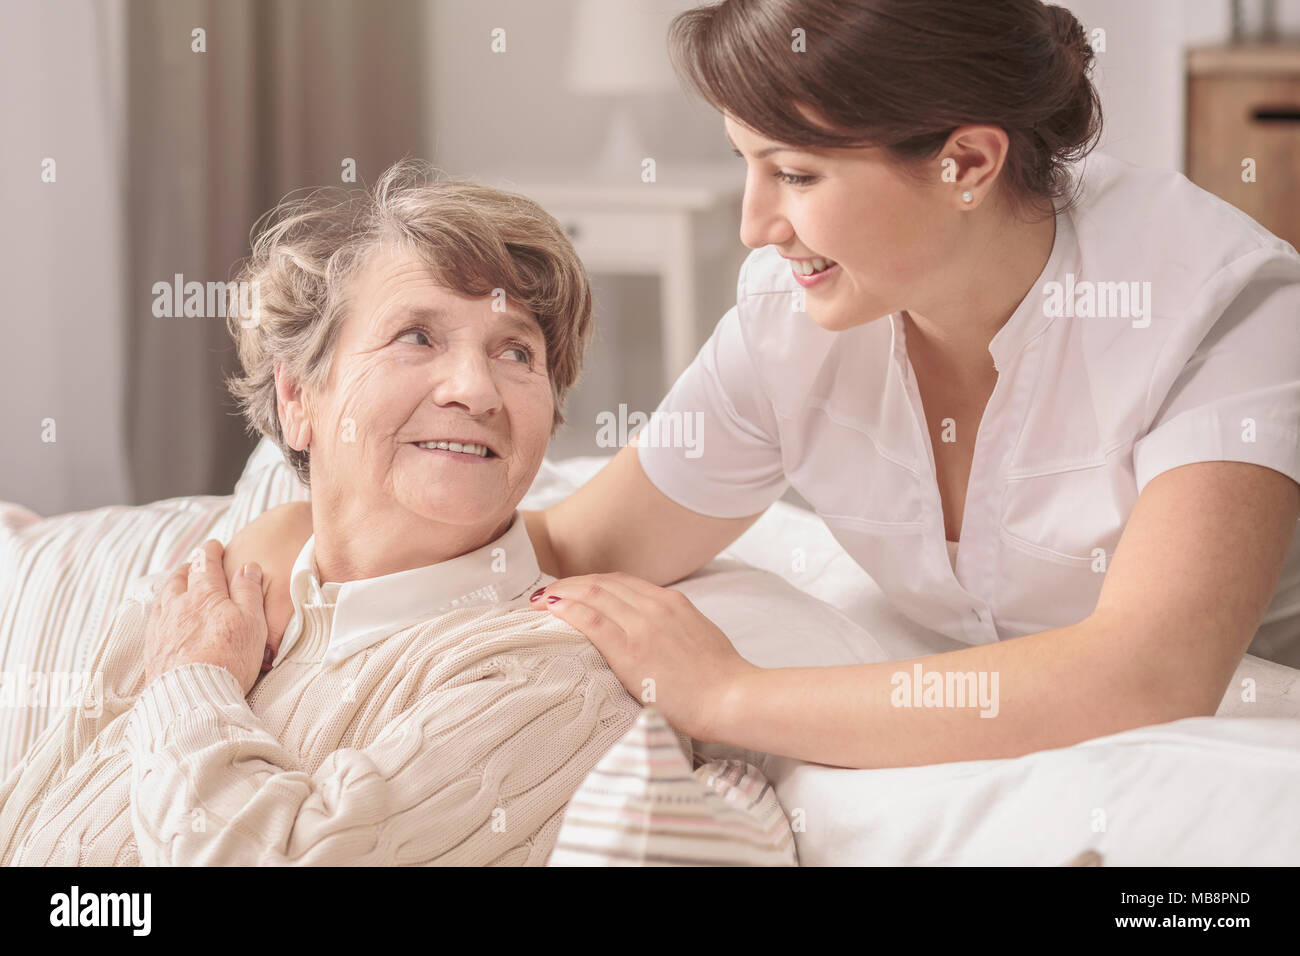 Hilfsbereit, junge, hübsche Krankenschwester unterstützt eine ältere nette Dame, die mit Alzheimer in einem Seniorenheim Stockfoto